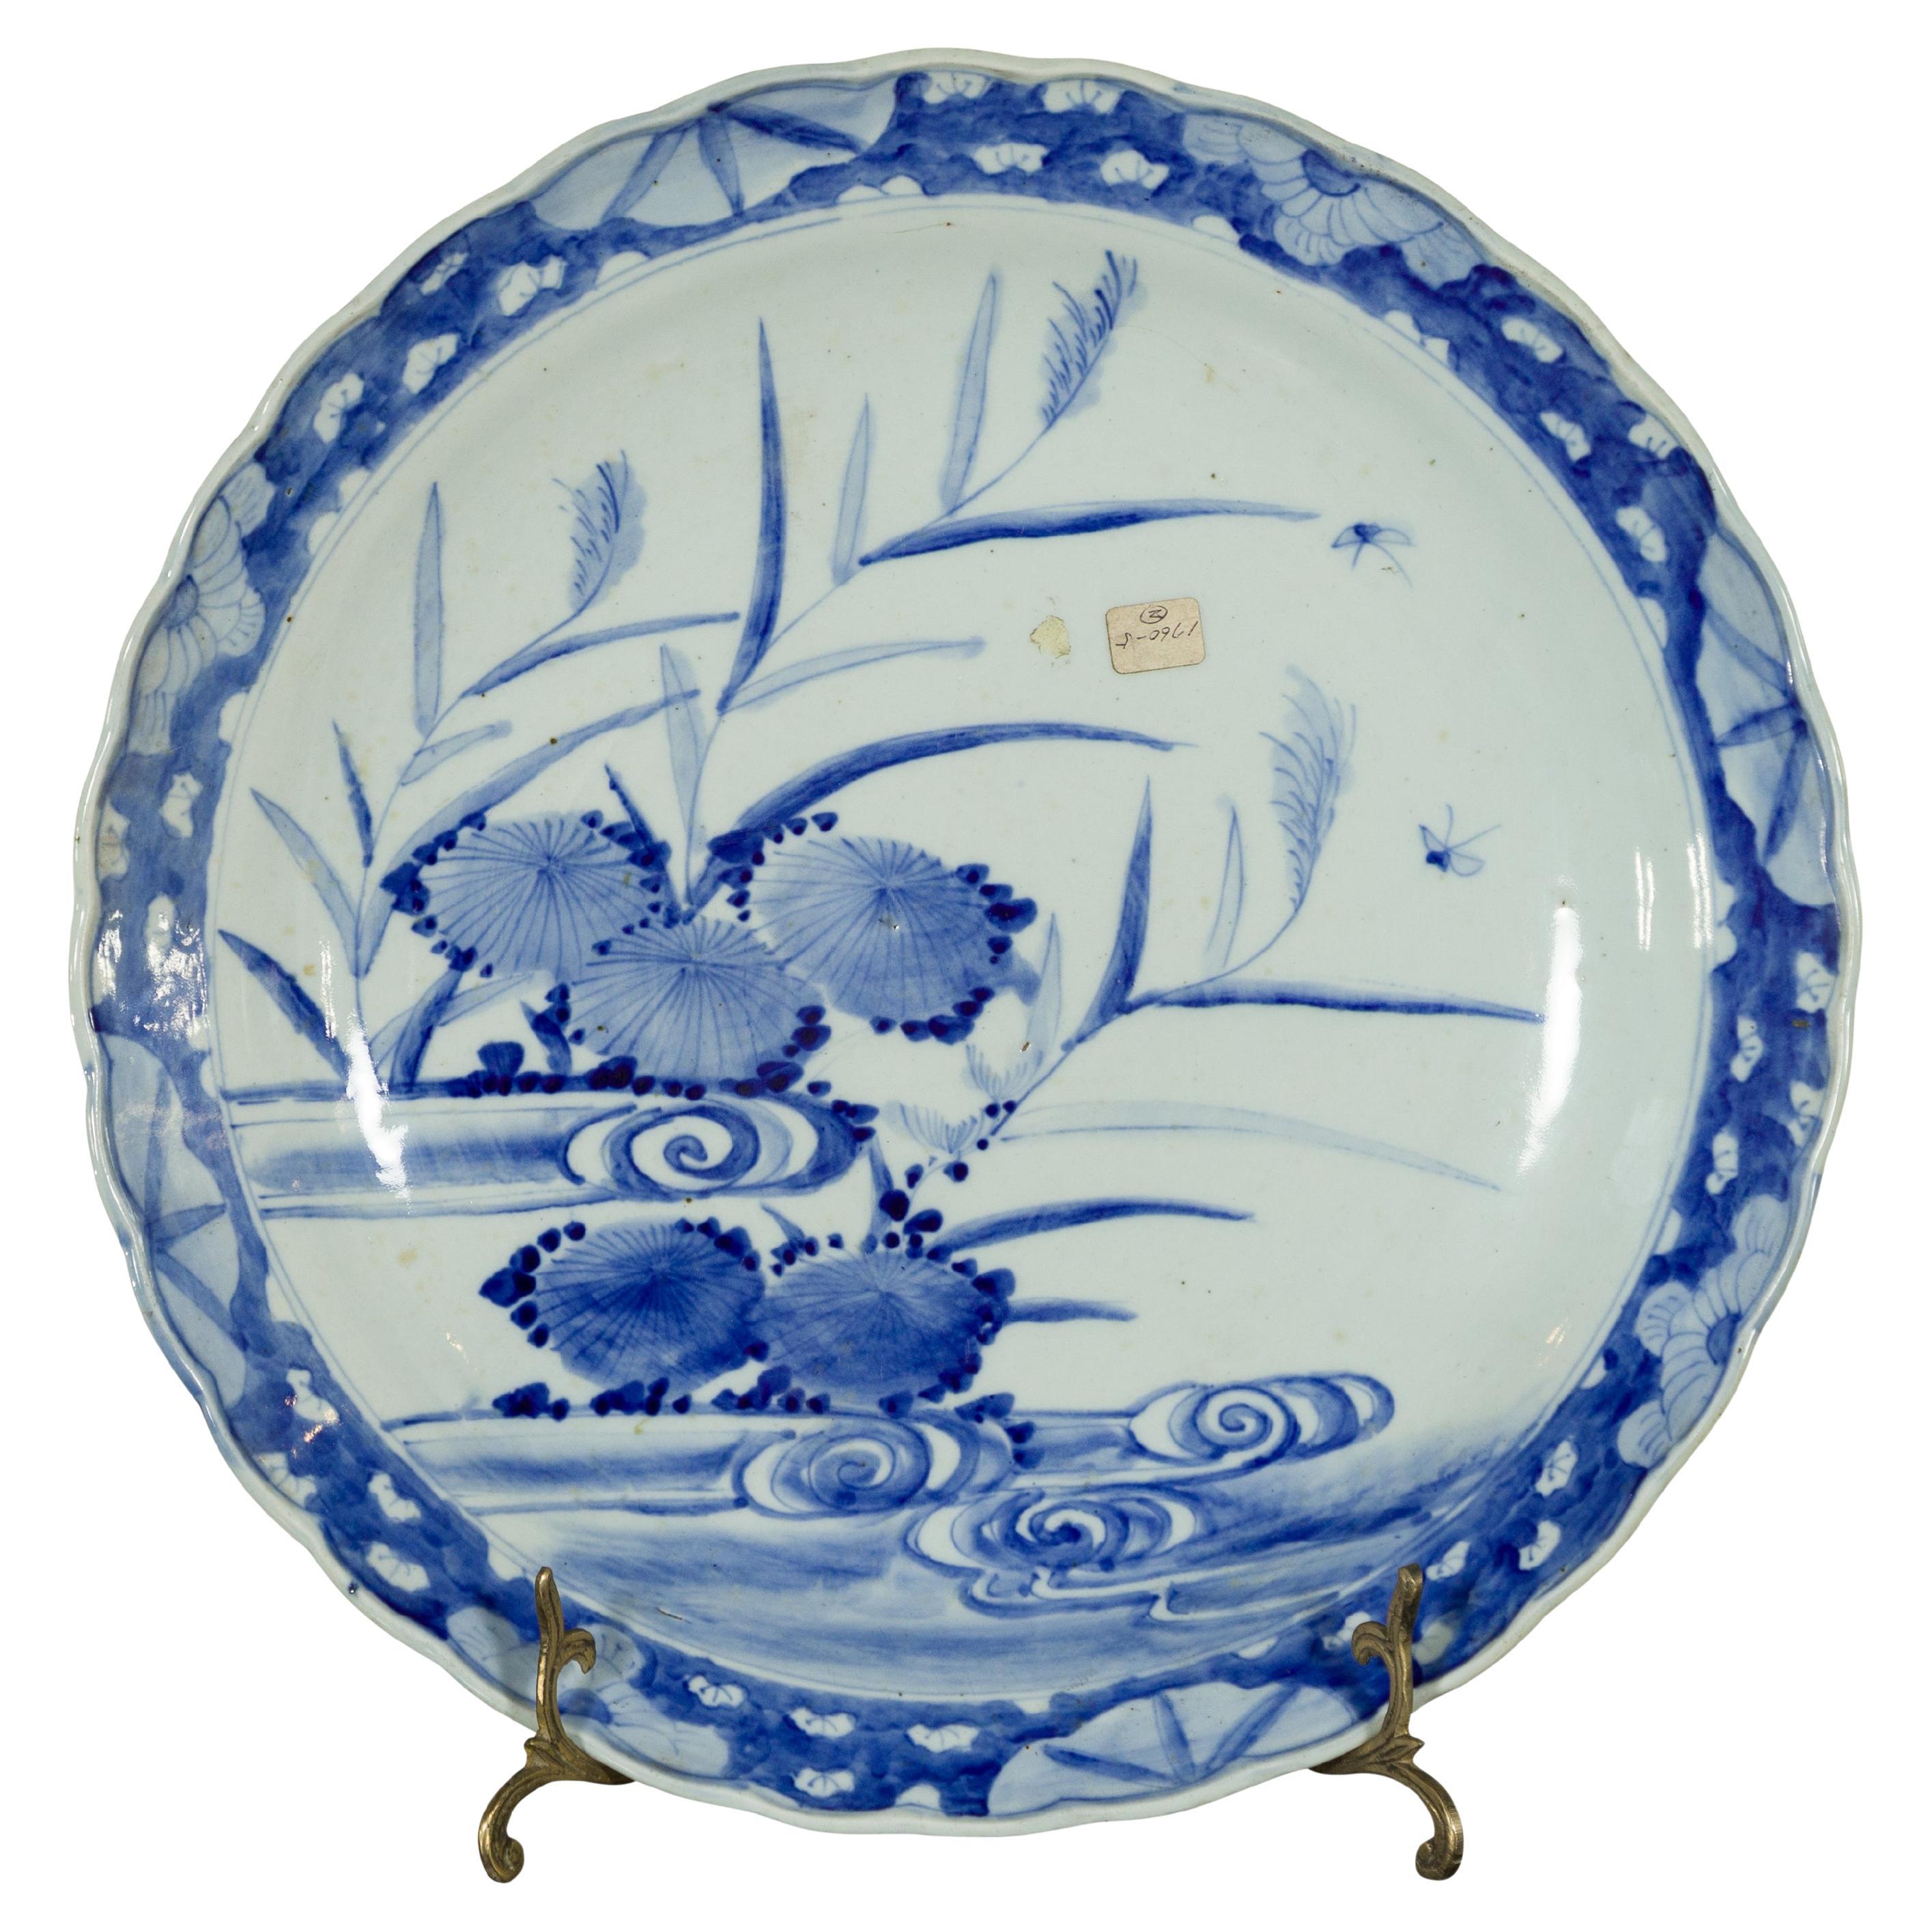 Assiette Imari Porcelain japonaise du 19e siècle avec décor peint en bleu et blanc